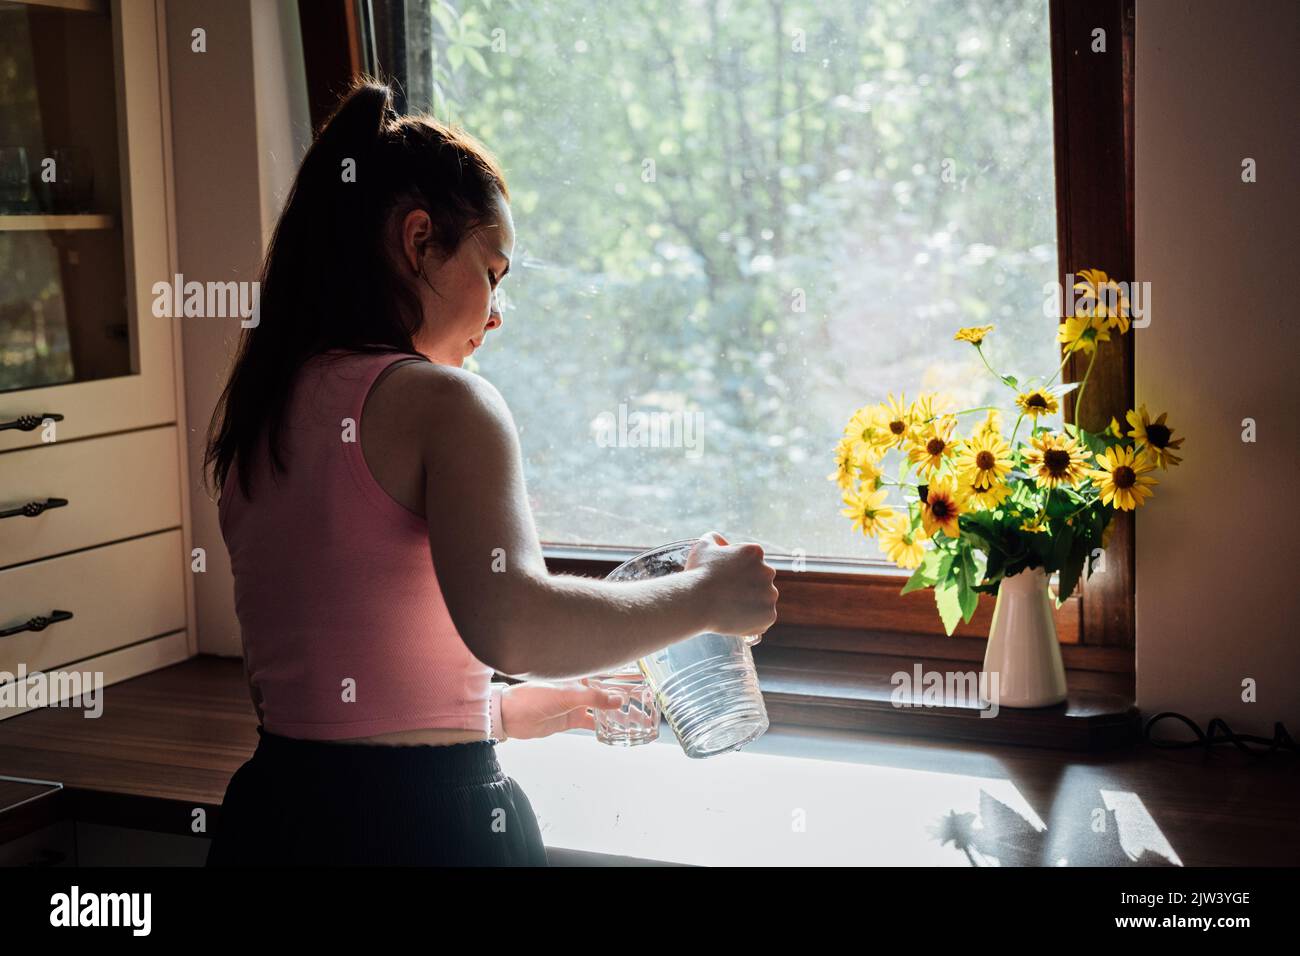 Junge Frau trinkt Wasser aus Glas in der Küche. Kaukasisches weibliches Modell mit transparentem Glas in der Hand. Stockfoto